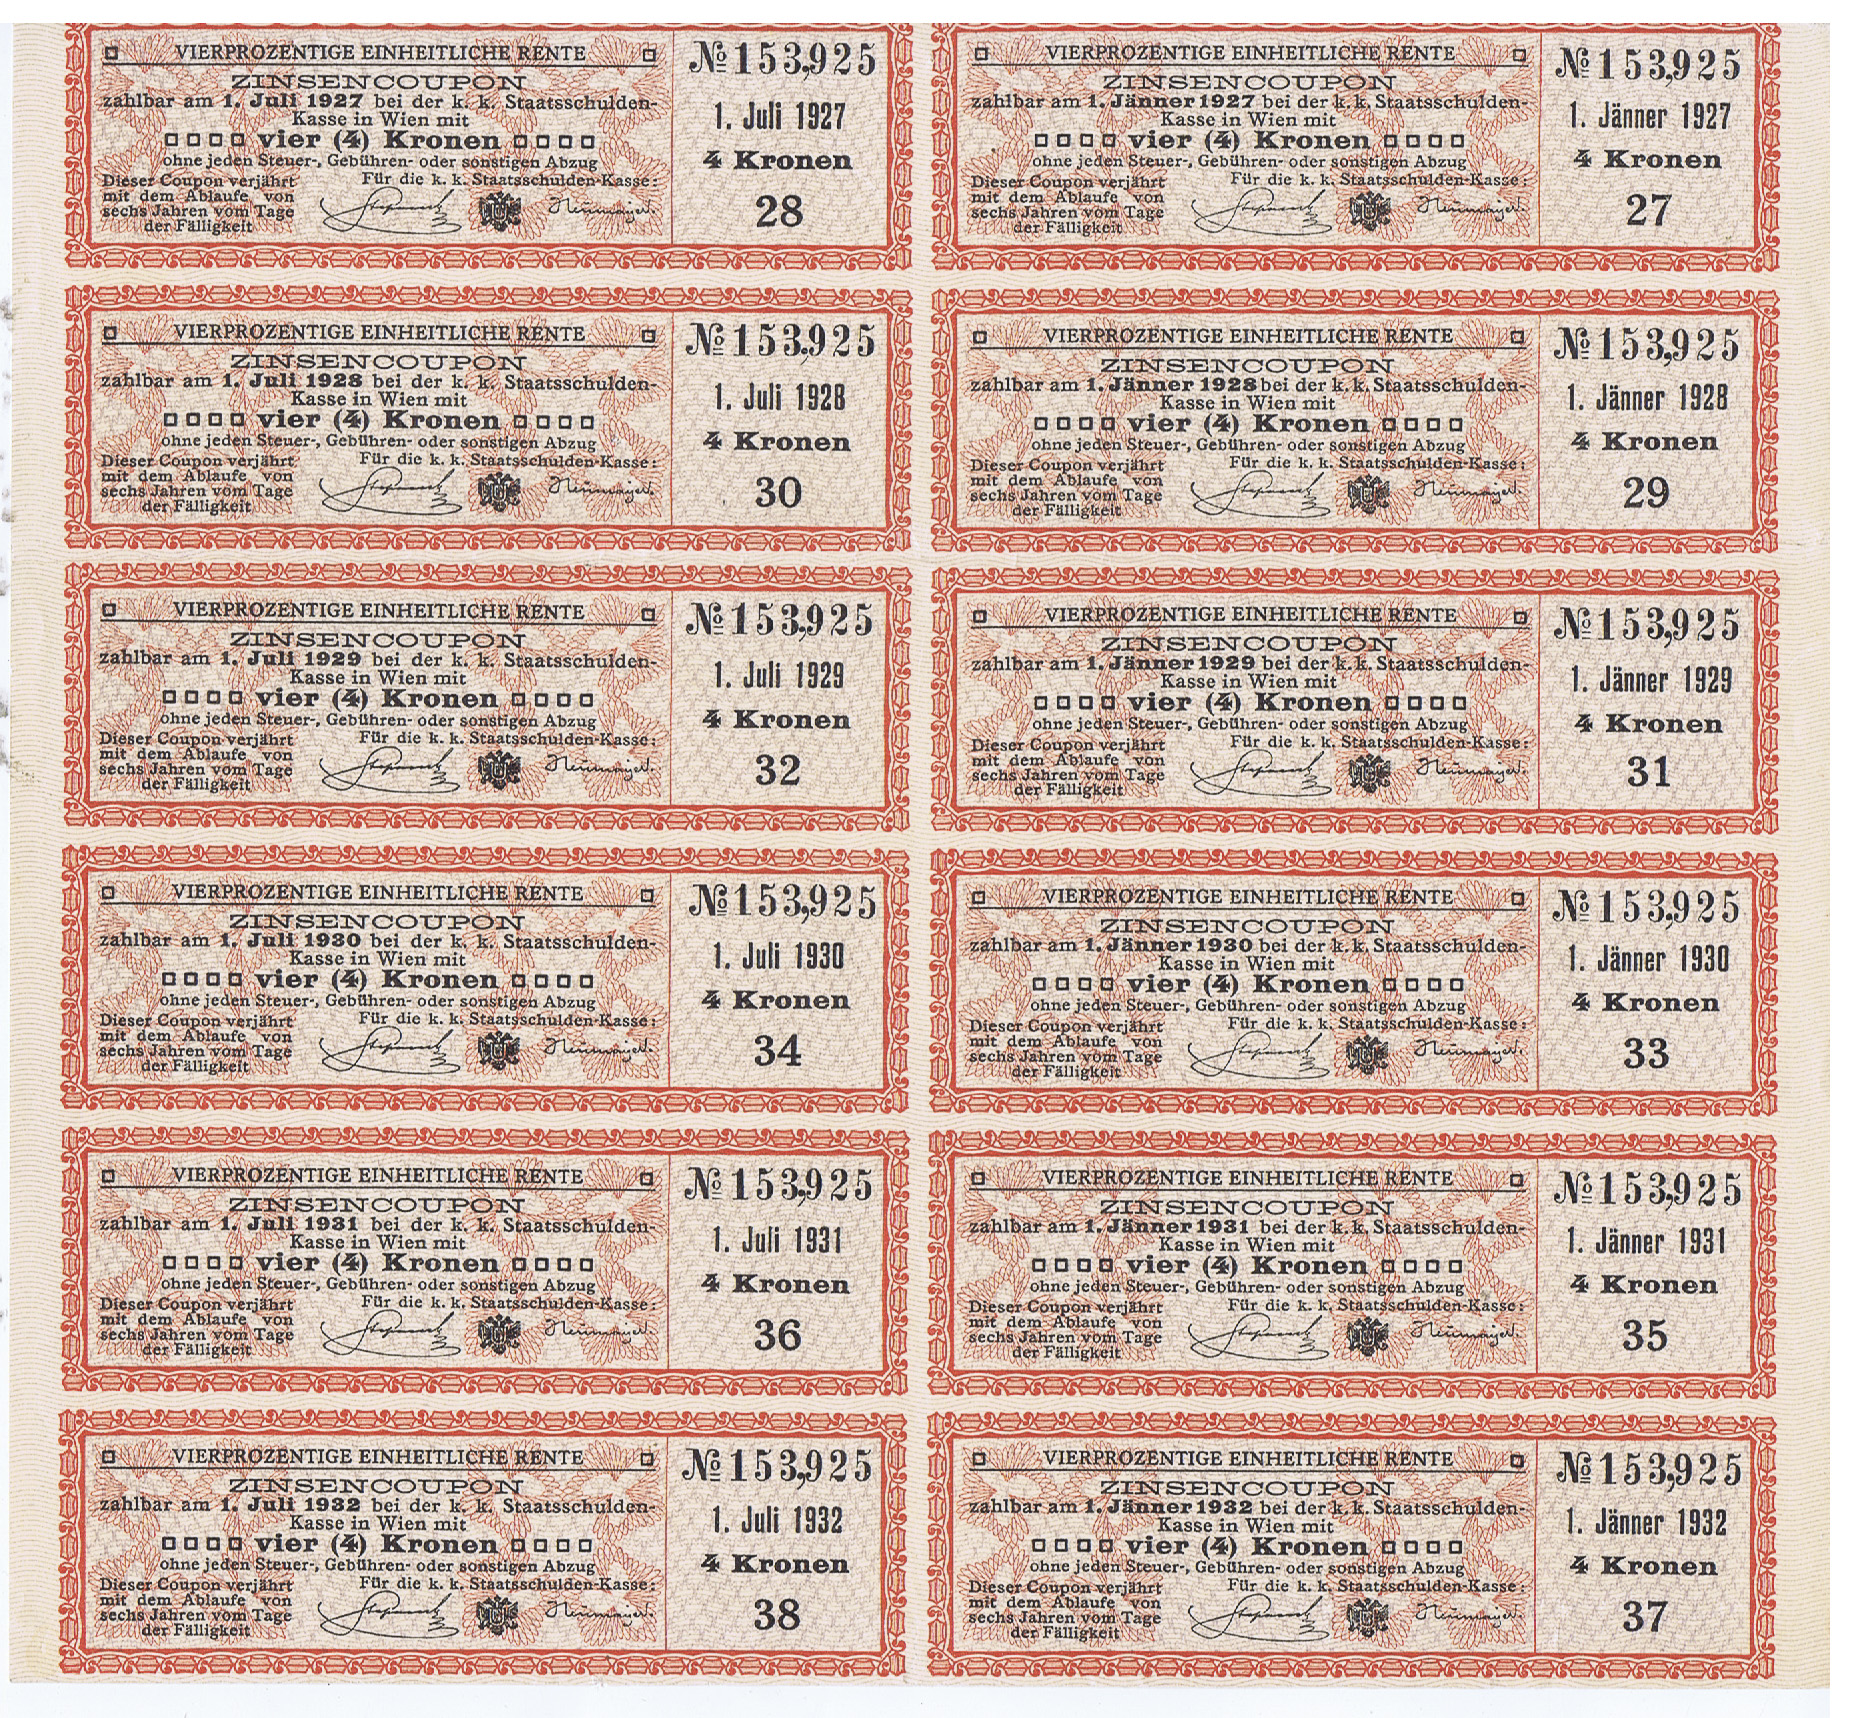  1 Einlagebeleg über 200 Kronen von 1919 und 1 Bogen Zinsencoupons zur österr. k.k. Staatsschuldverschreibung von 1927 bis 1932.